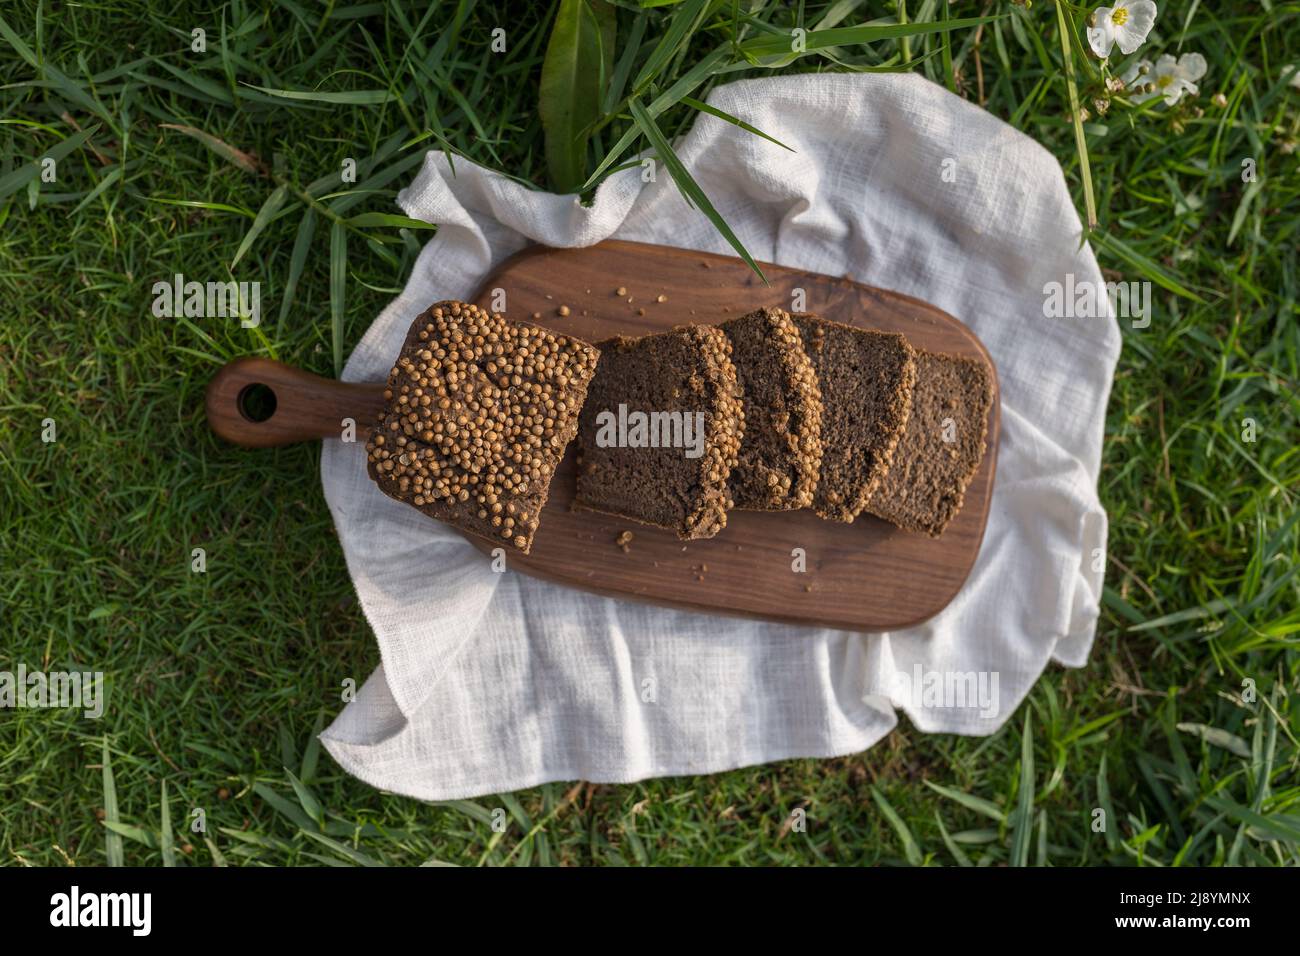 Composizione del pane casereccio su tavola di legno con tovagliolo bianco sull'erba verde. Foto di alta qualità Foto Stock